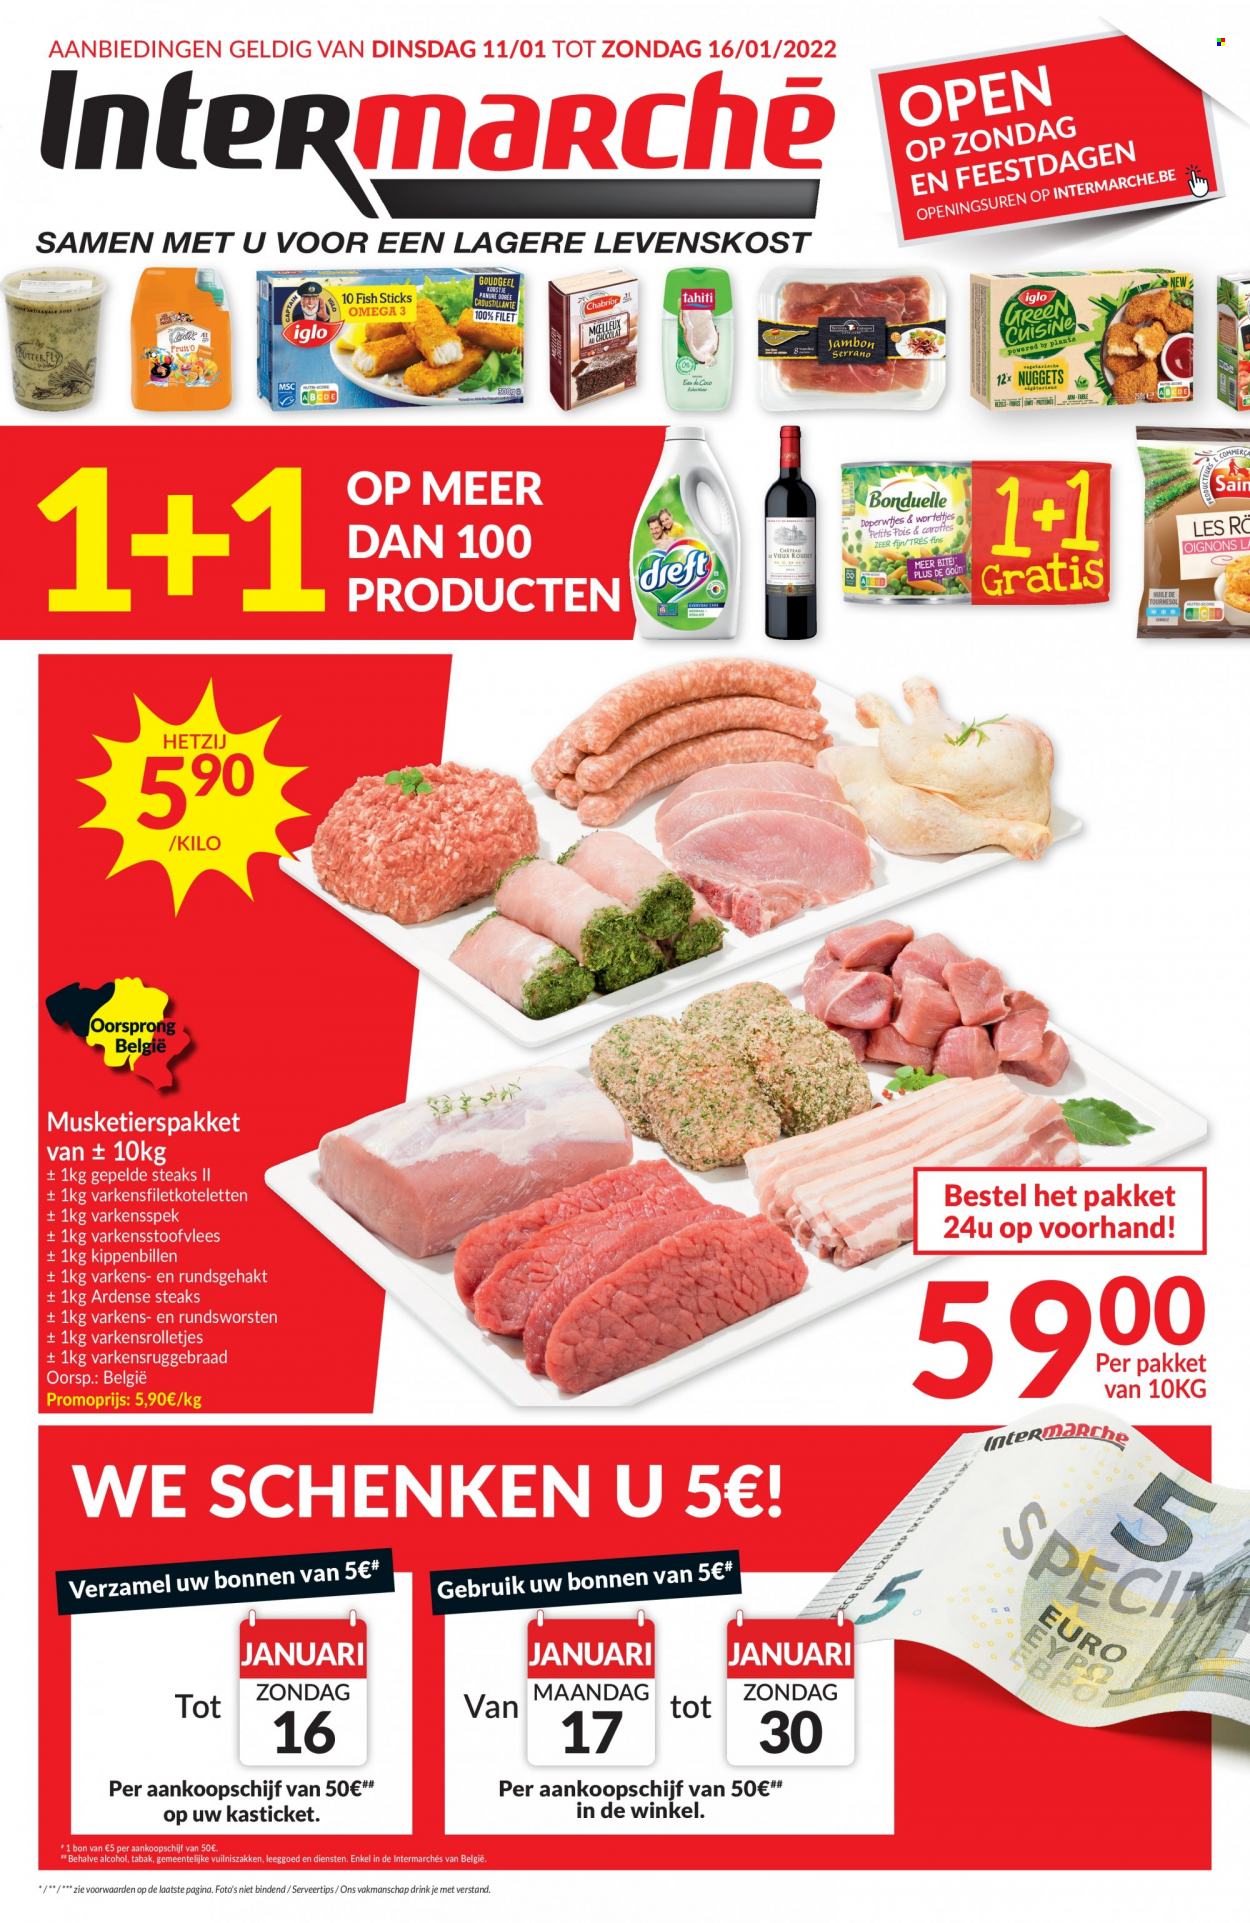 Intermarché-aanbieding - 11.1.2022 - 16.1.2022 -  producten in de aanbieding - steak, foto. Pagina 1.